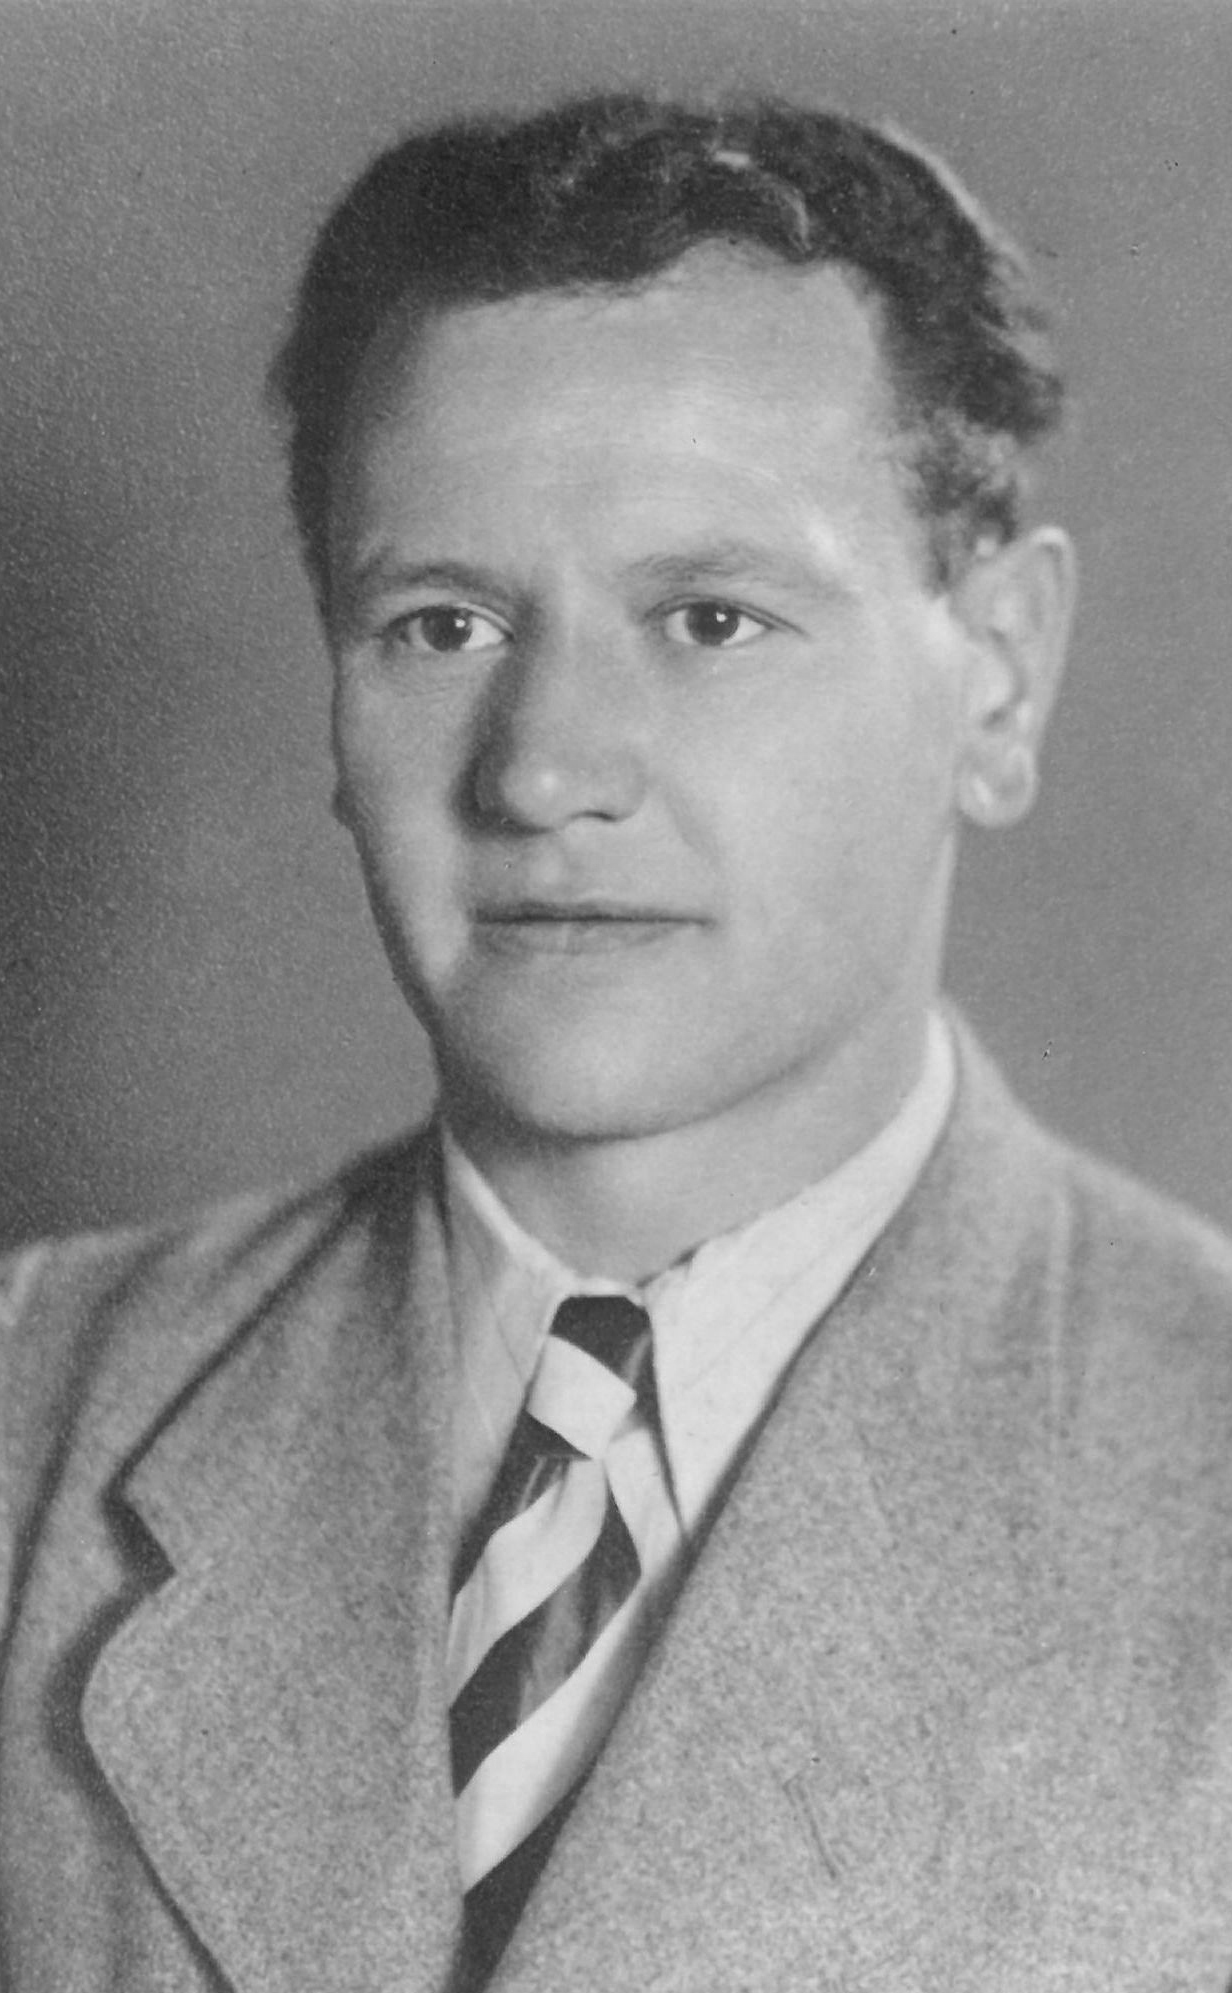 Heinrich Emil Matz